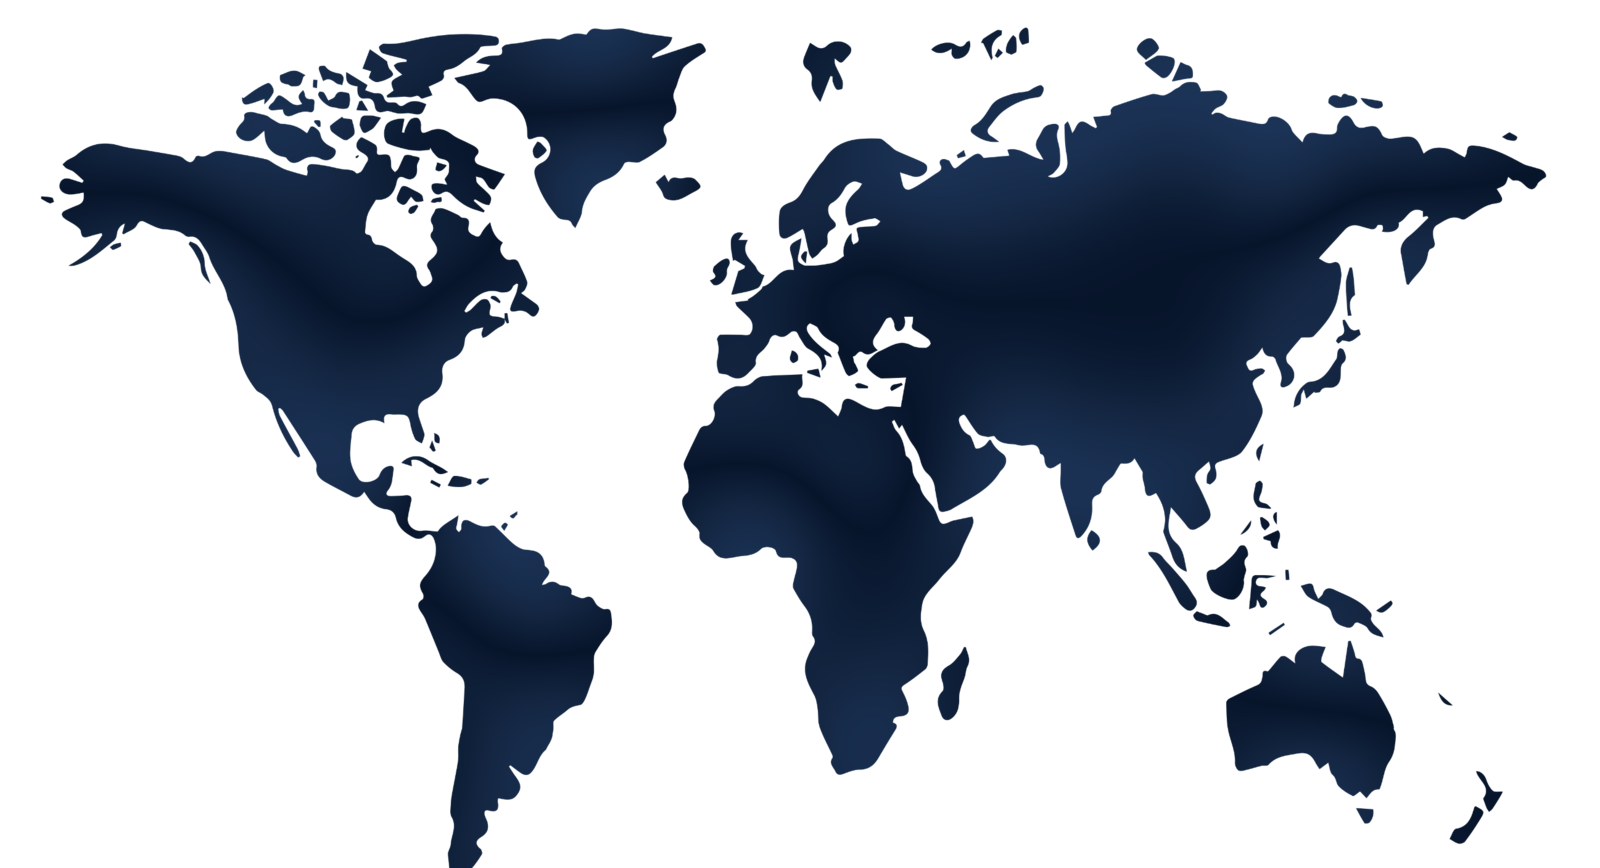 Mapa mundi con puntos que representa el alcance mundial de Fossil.